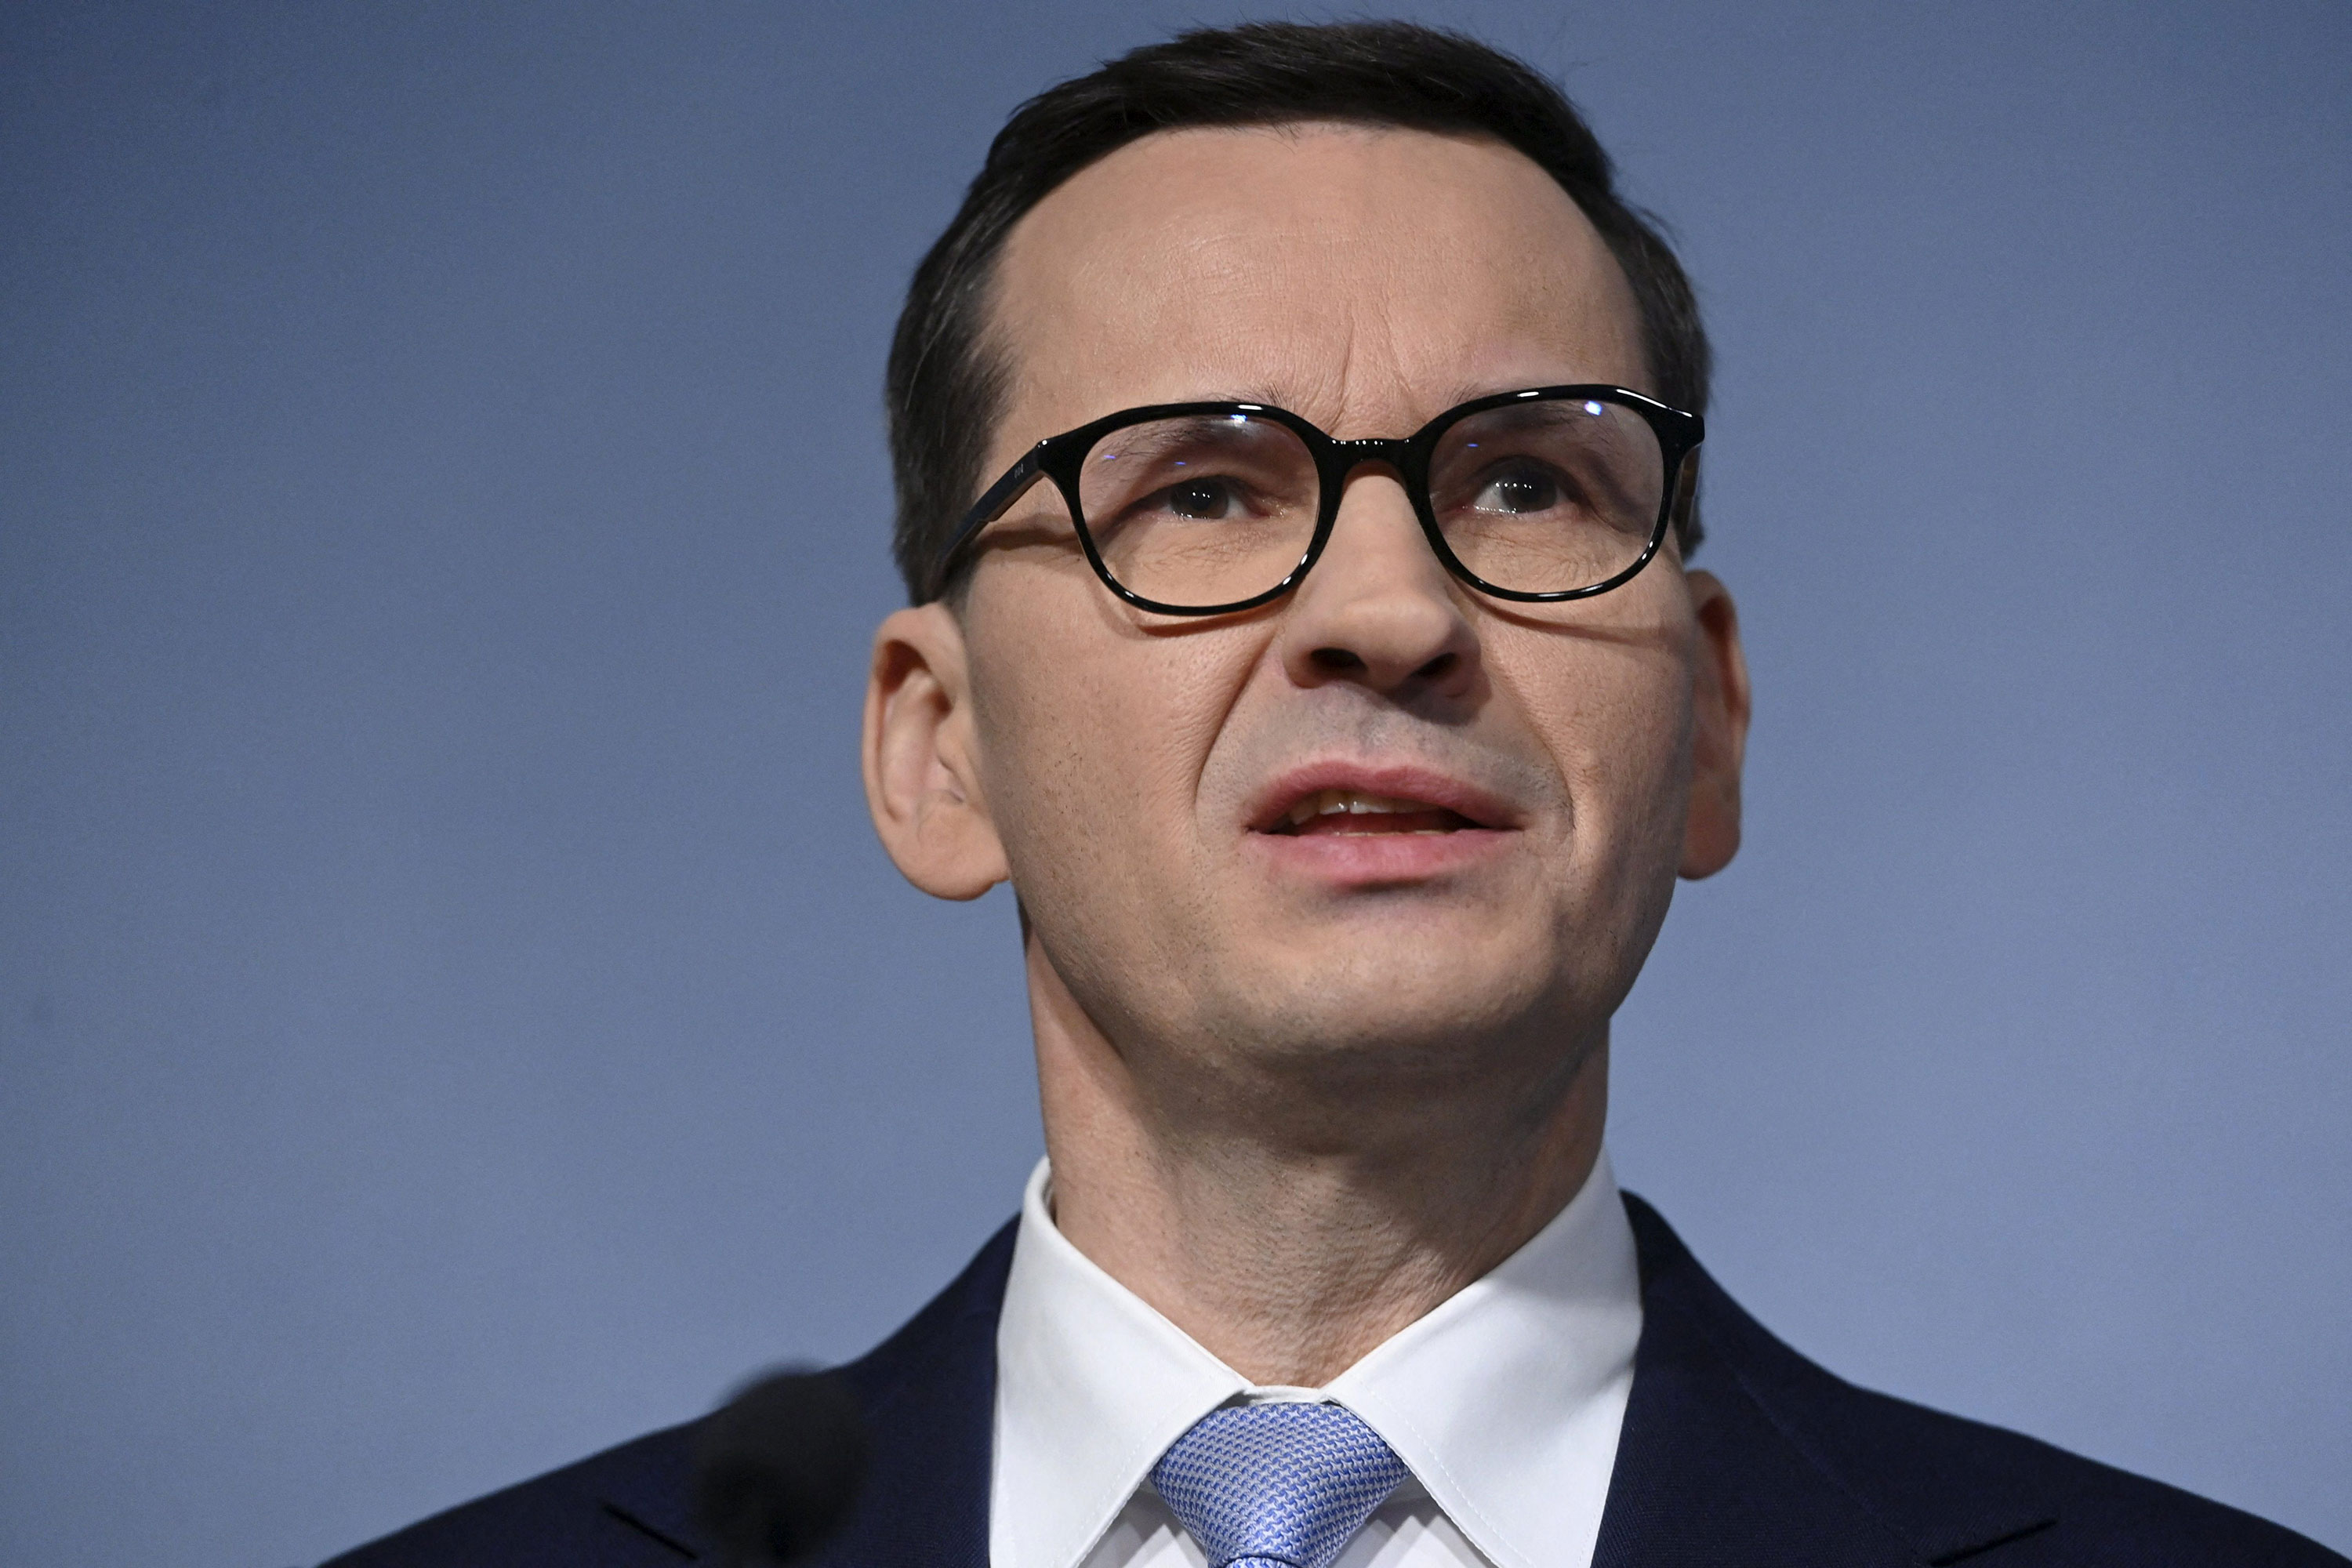 El primer Ministro de Polonia, Mateusz Morawiecki, en una fotografía de archivo (Heikki Saukkomaa/Lehtikuva/AFP/Getty Images)